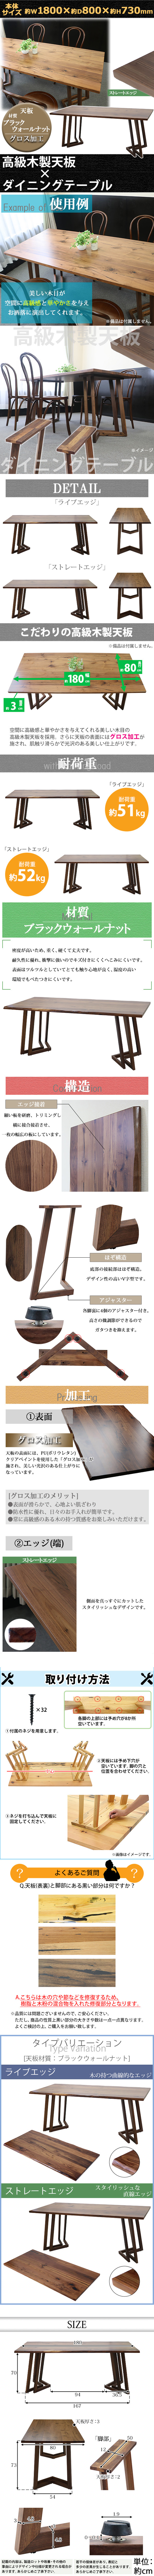 日本製品送料無料 ダイニングテーブル 約W180×約D80×約H73cm ブラックウォールナット材 4人掛け 6人掛け ストレートエッジ 高級 木製 天板 4人用